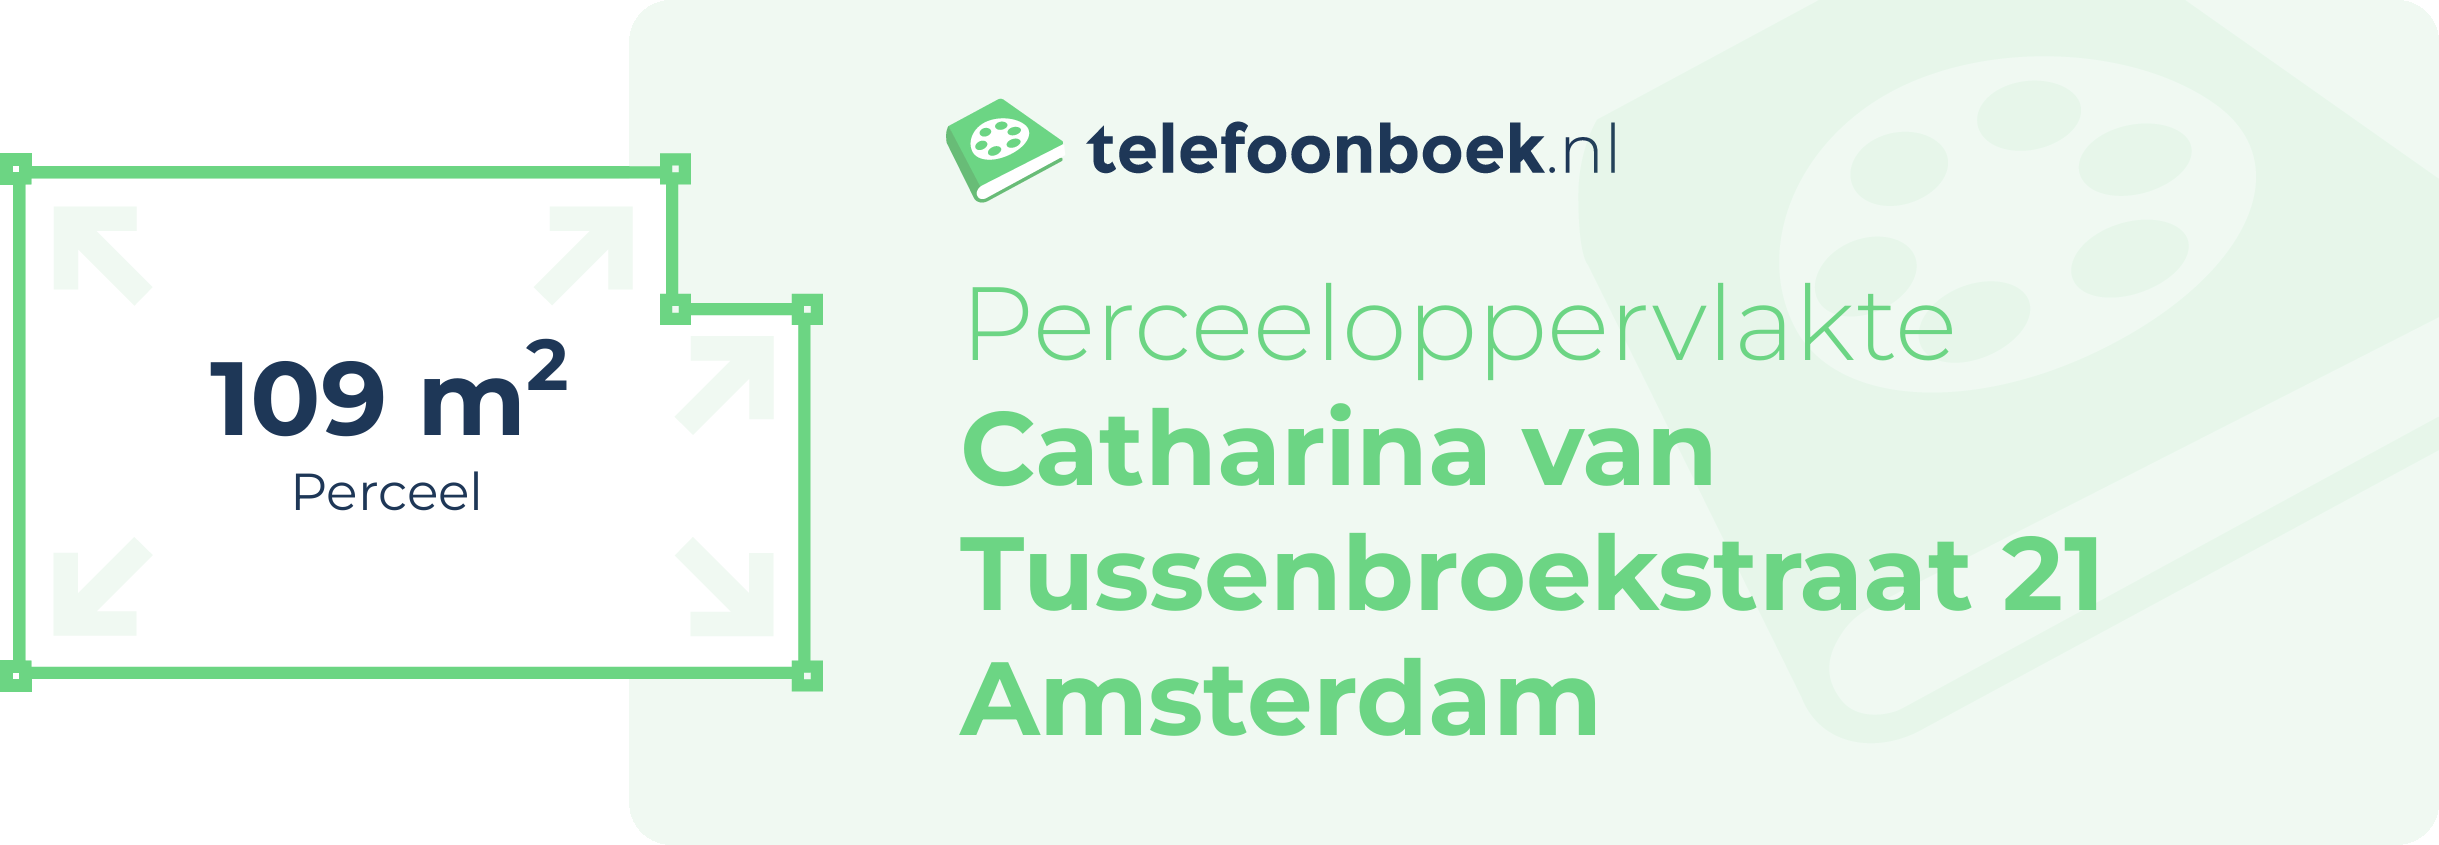 Perceeloppervlakte Catharina Van Tussenbroekstraat 21 Amsterdam